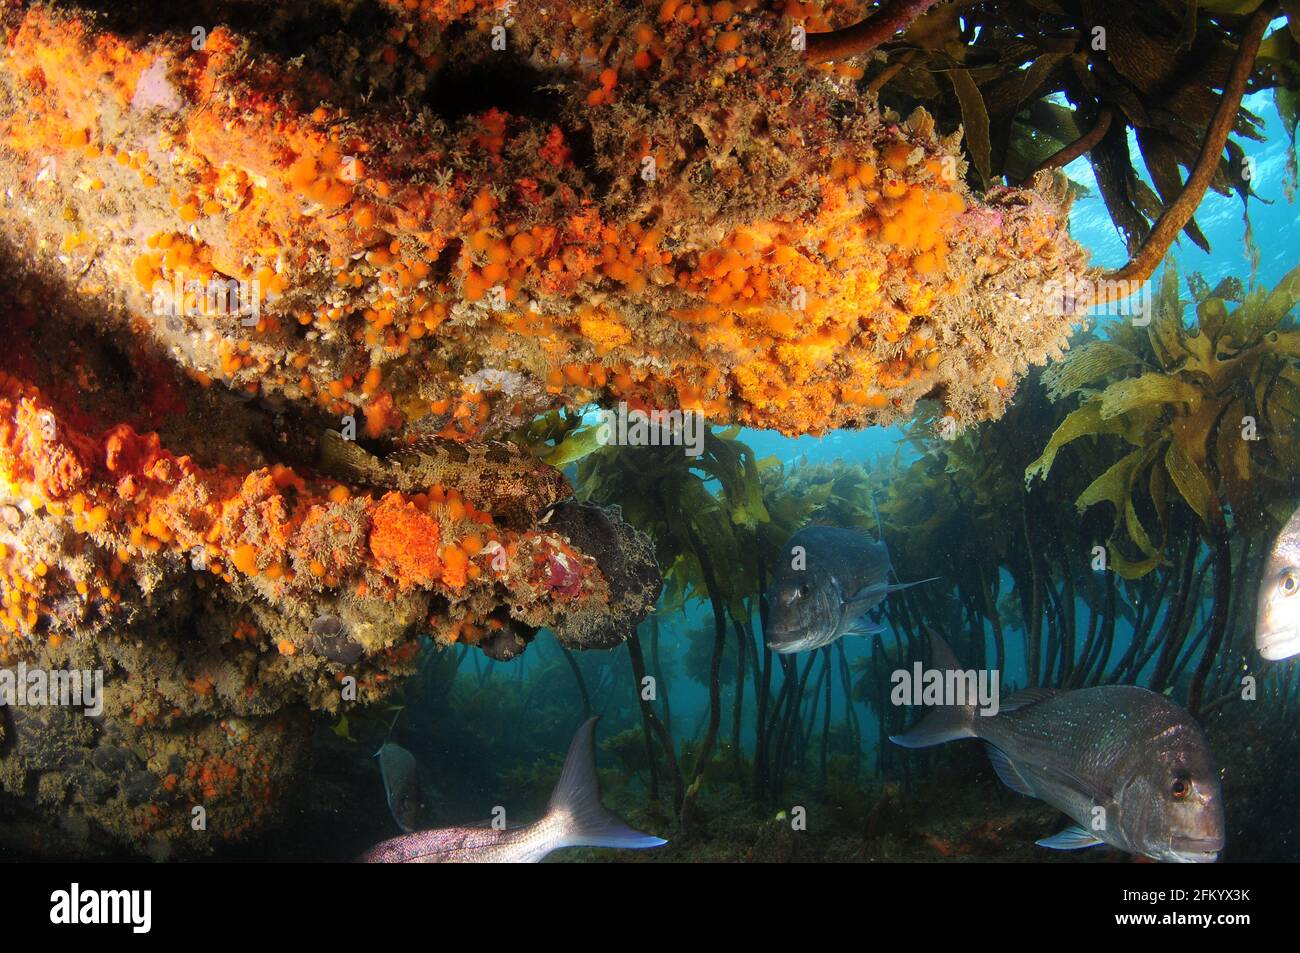 Les grands sneppers Australasiens nagent sous un surplomb coloré tandis que le poisson-varech bien camouflé se trouve sur une étagère rocheuse. Banque D'Images